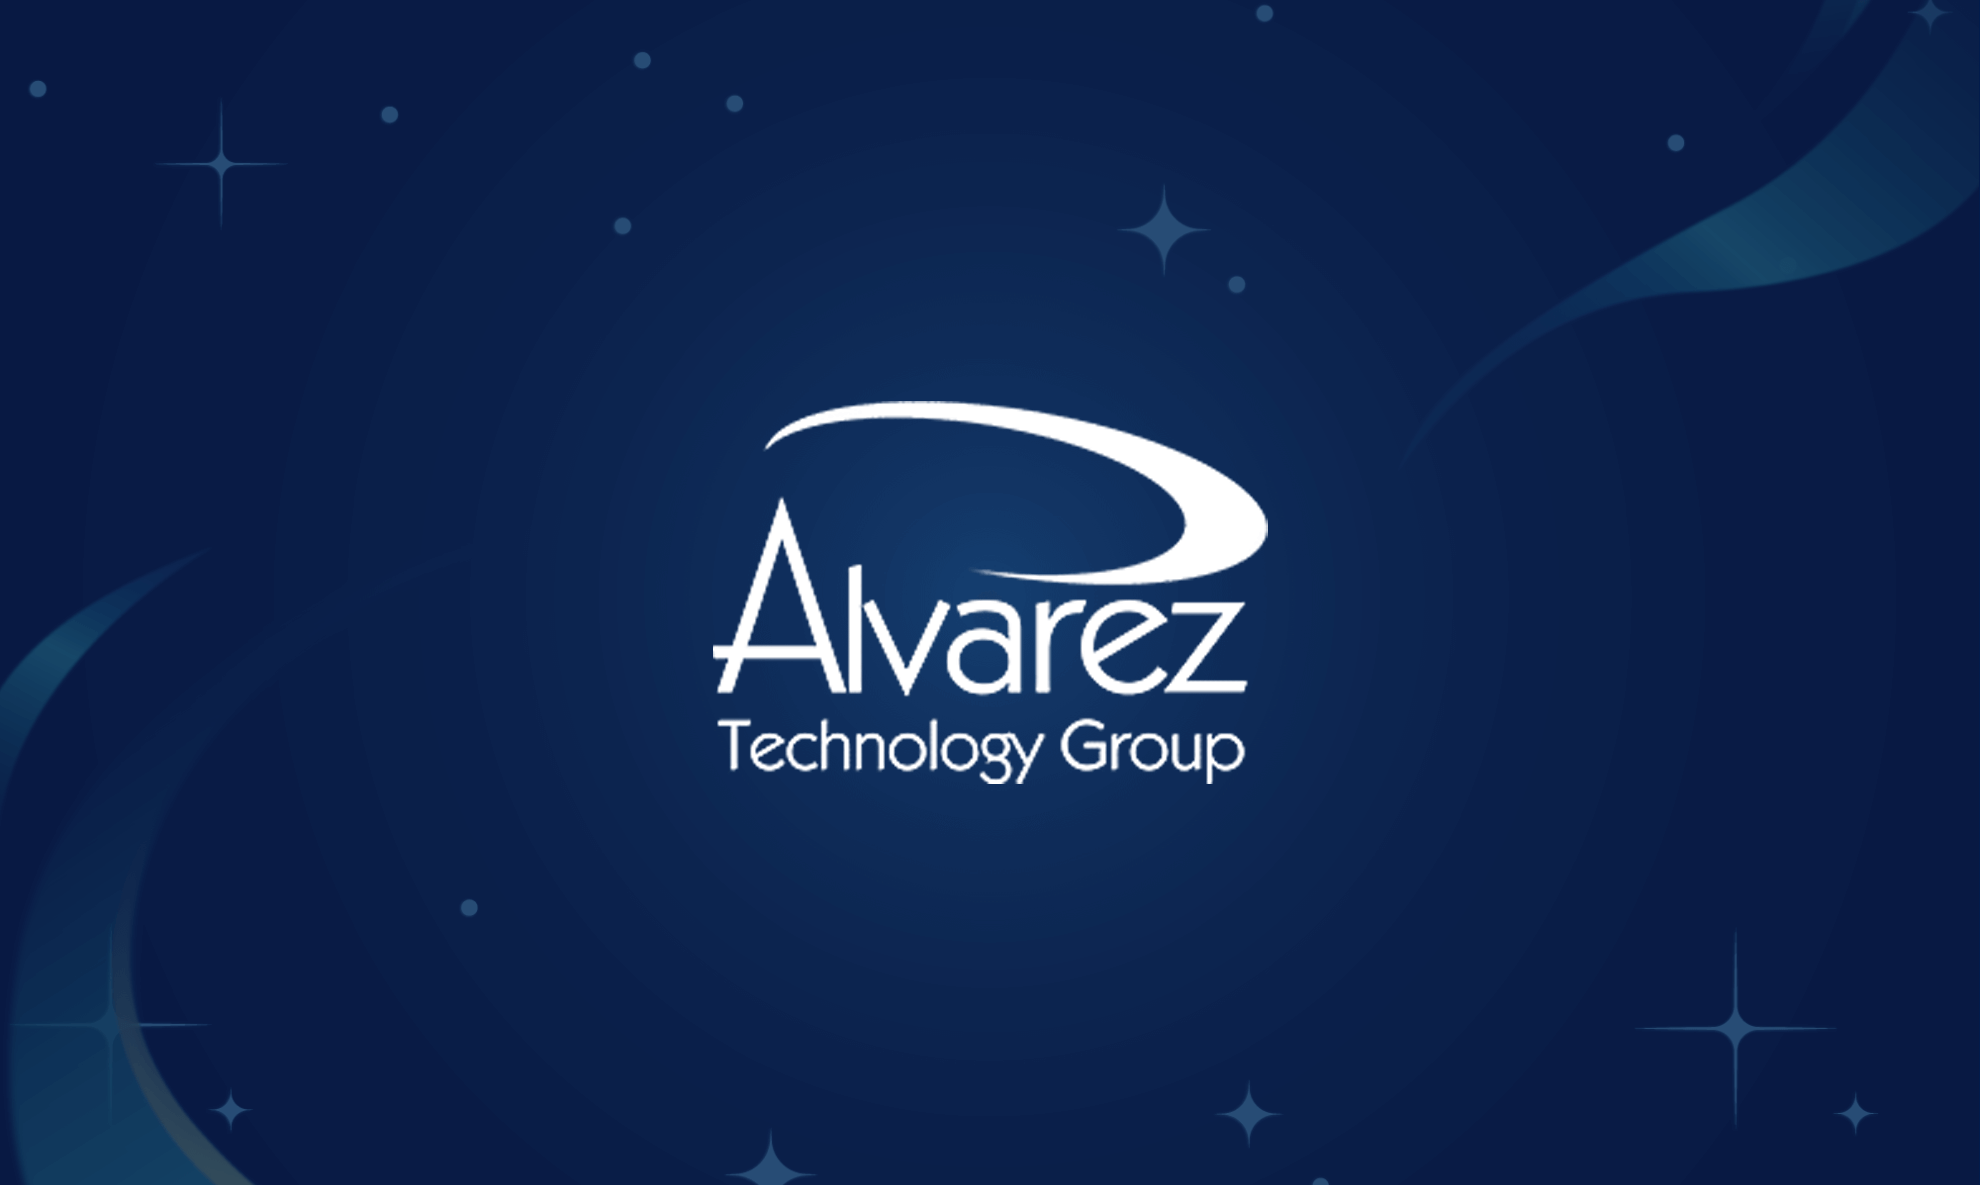 Managed Service Provider Case Study - Alvarez Technology